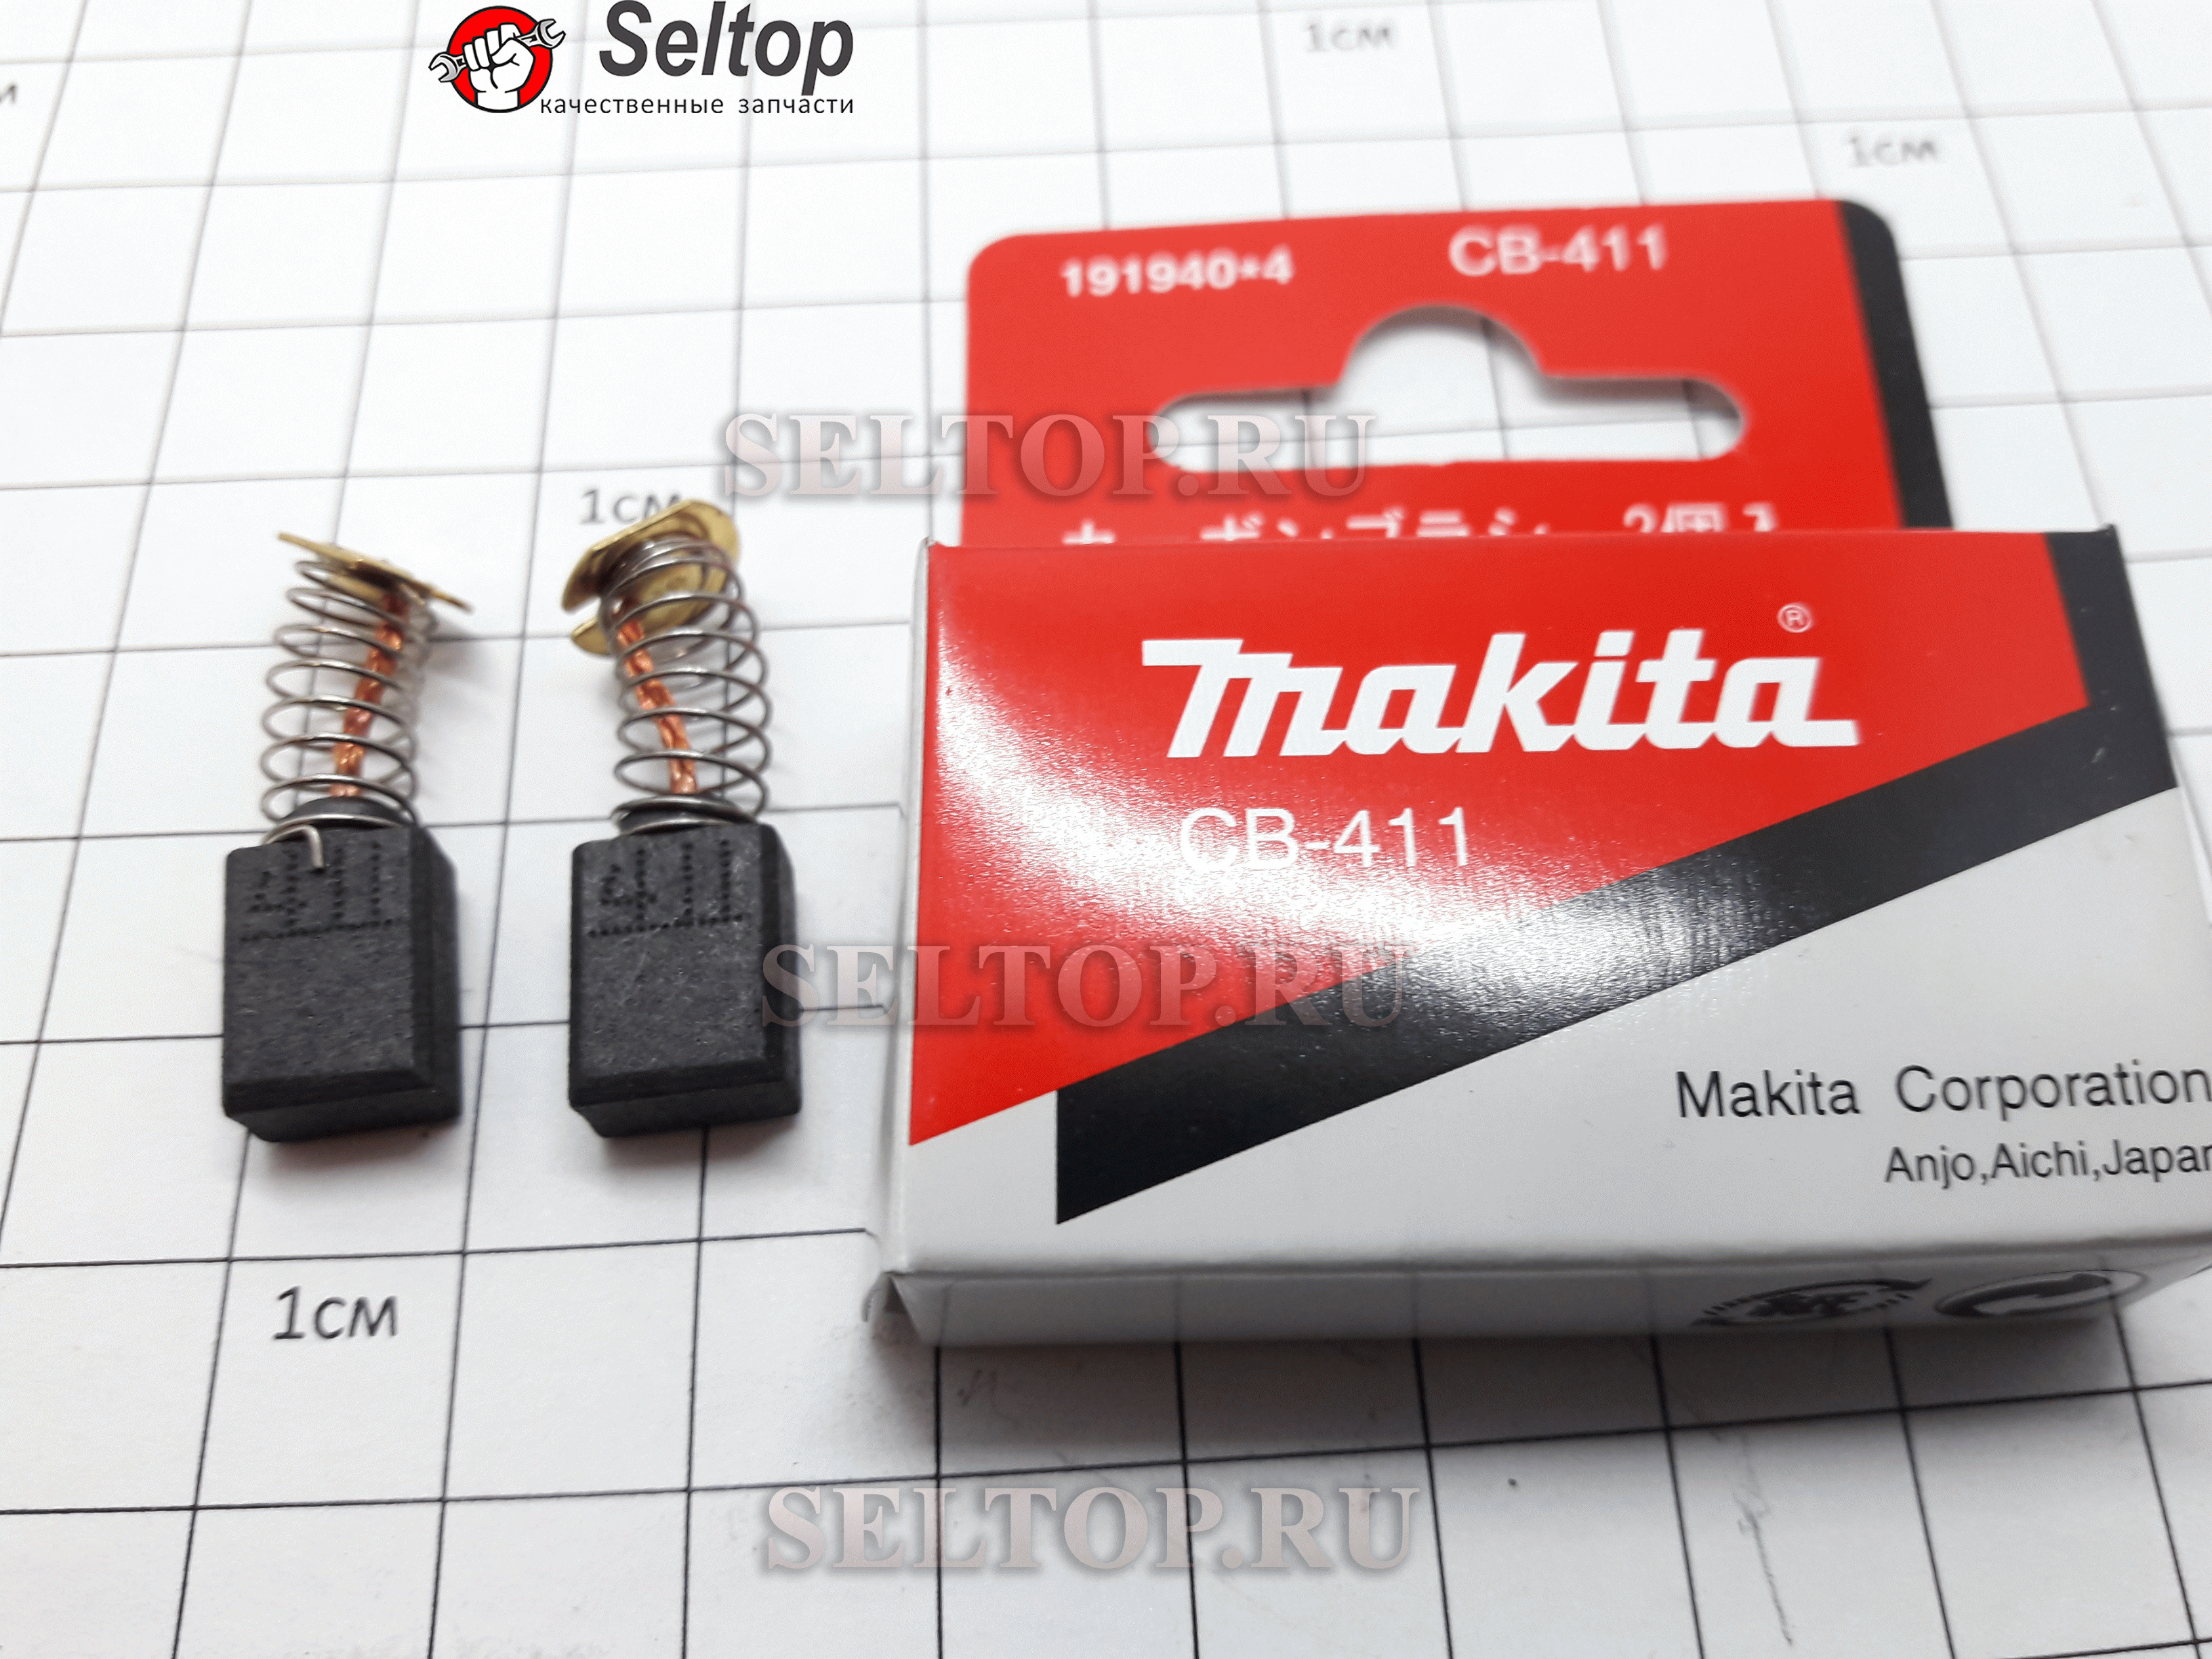 Щетки угольные (графитовые) Макита, в комплекте 2 шт. CB-411 для болгарки Makita 9528 NB